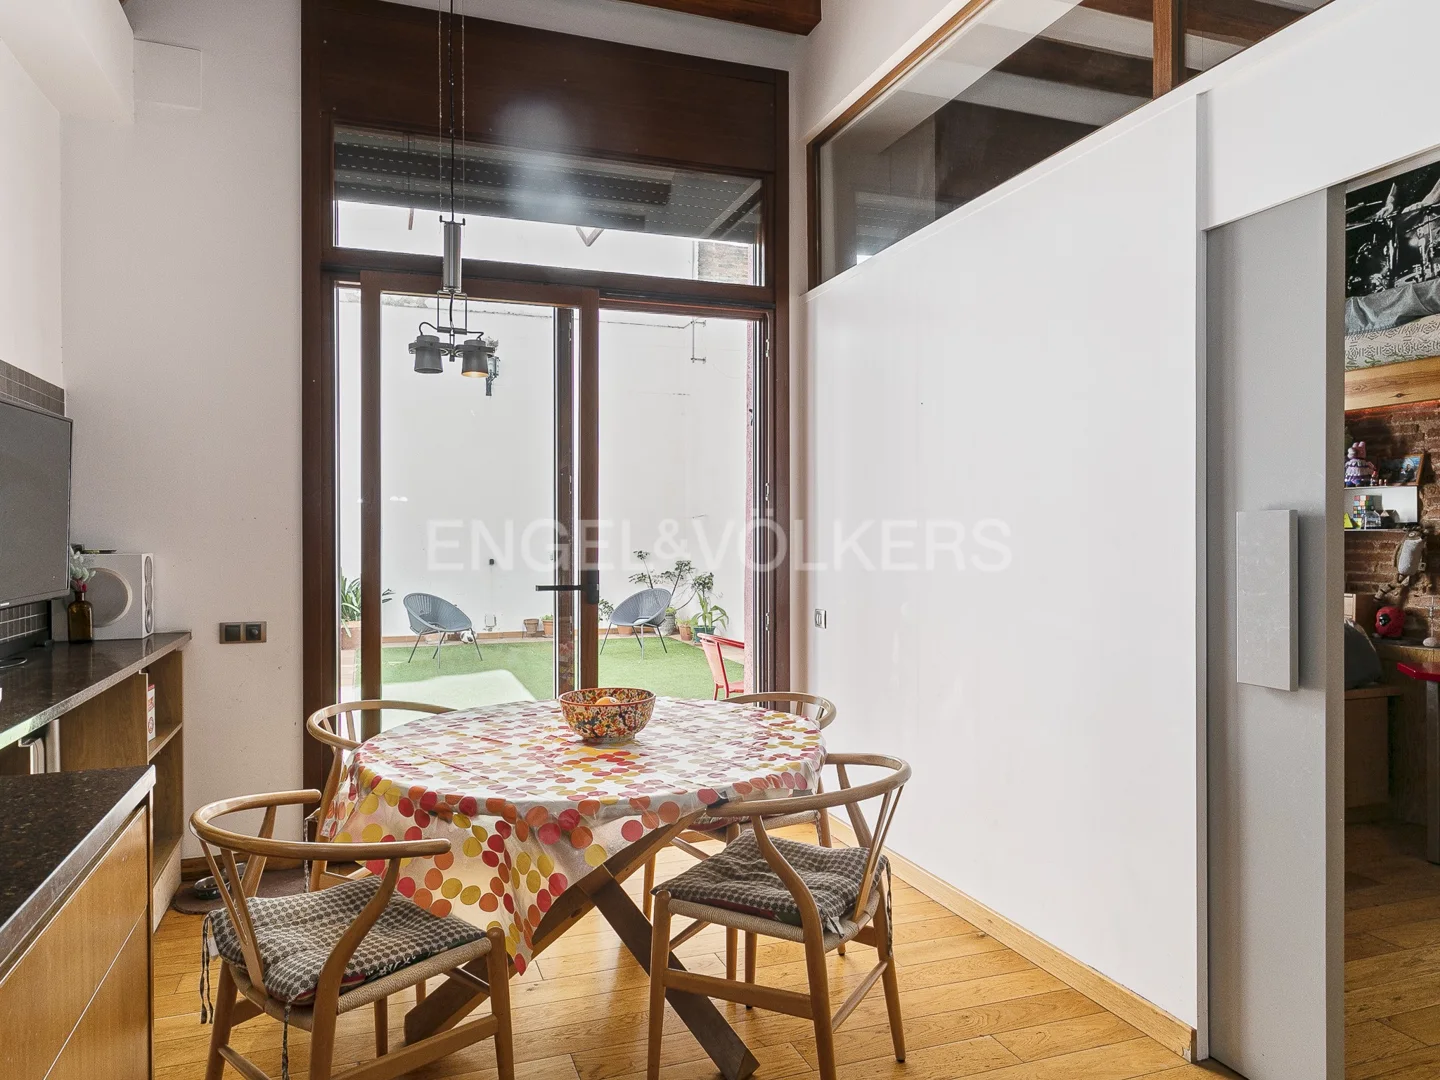 Engel & Völkers presenta este exclusivo piso en el barrio de Sants